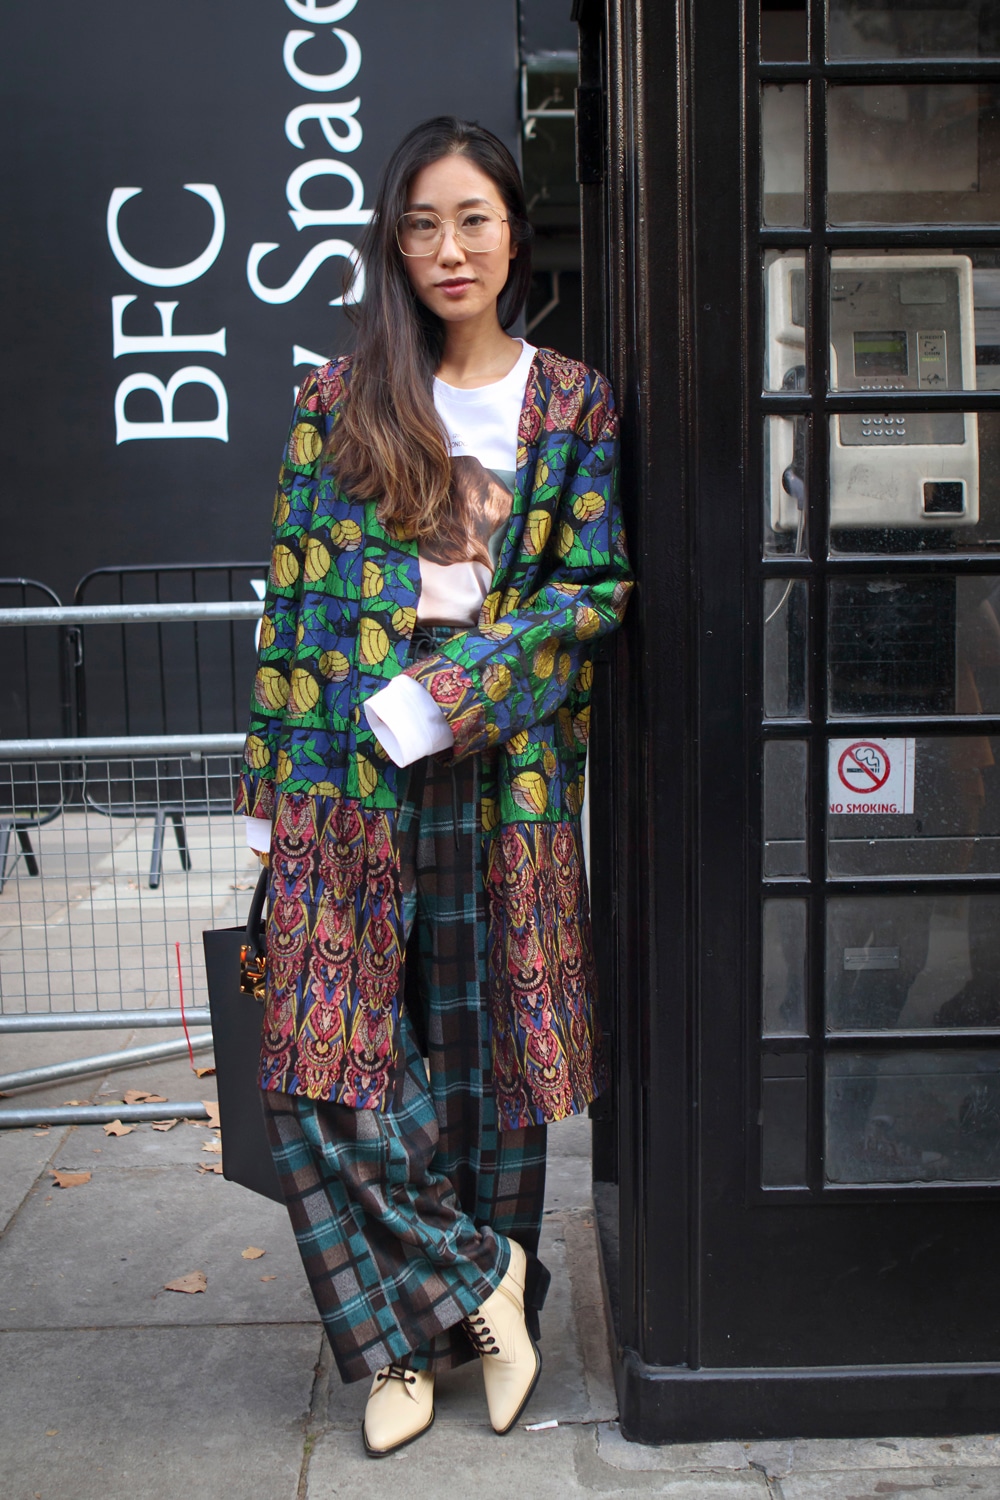 Comment porter le kimono en version ville et avec style